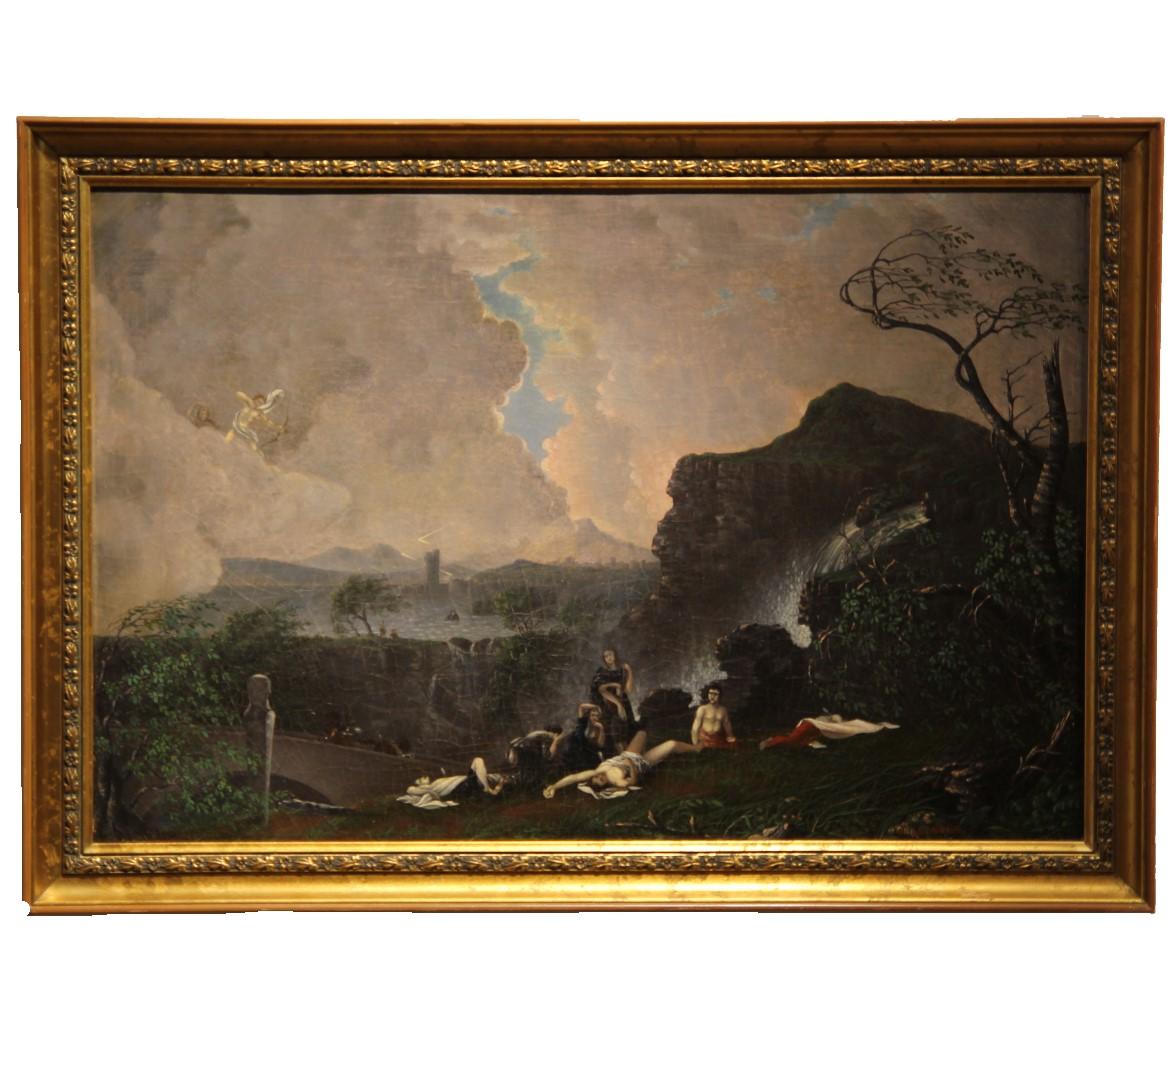 J.J. Walshe Landscape Painting – Griechisch/römisches naturalistisches Allegoriengemälde